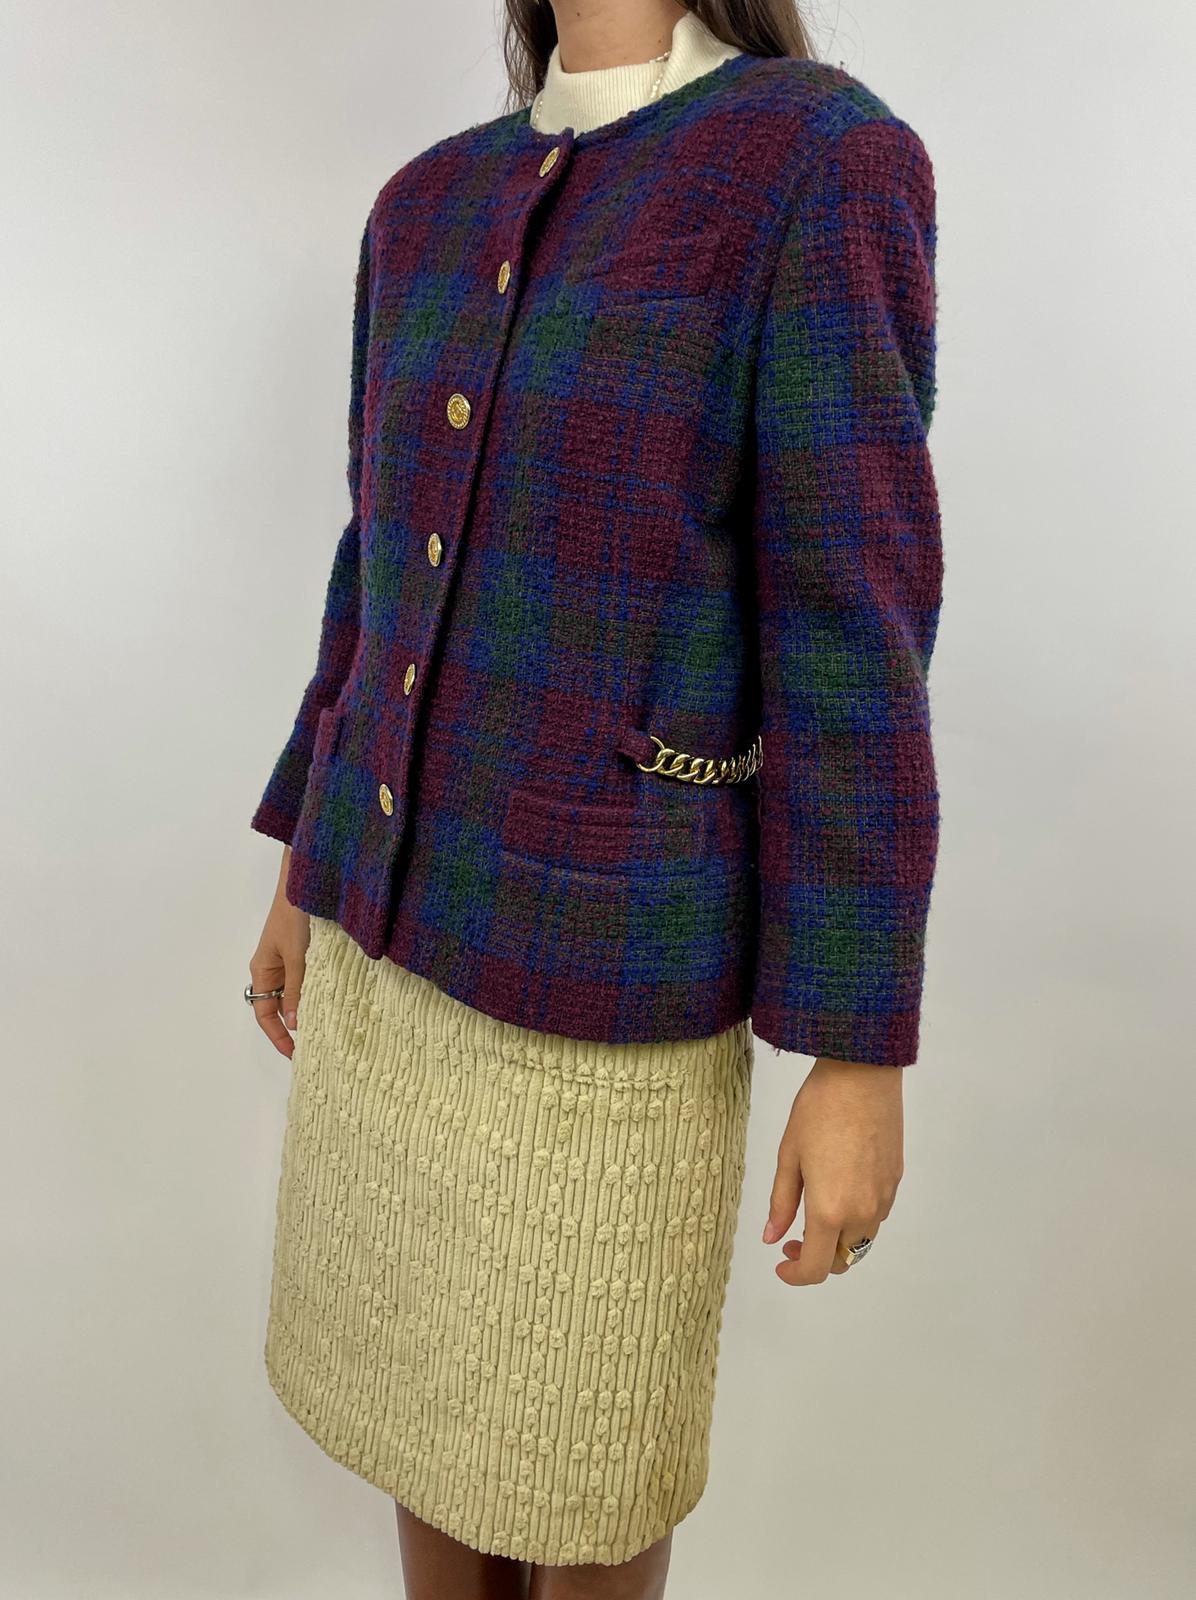 Celine Paris 1980s jacket